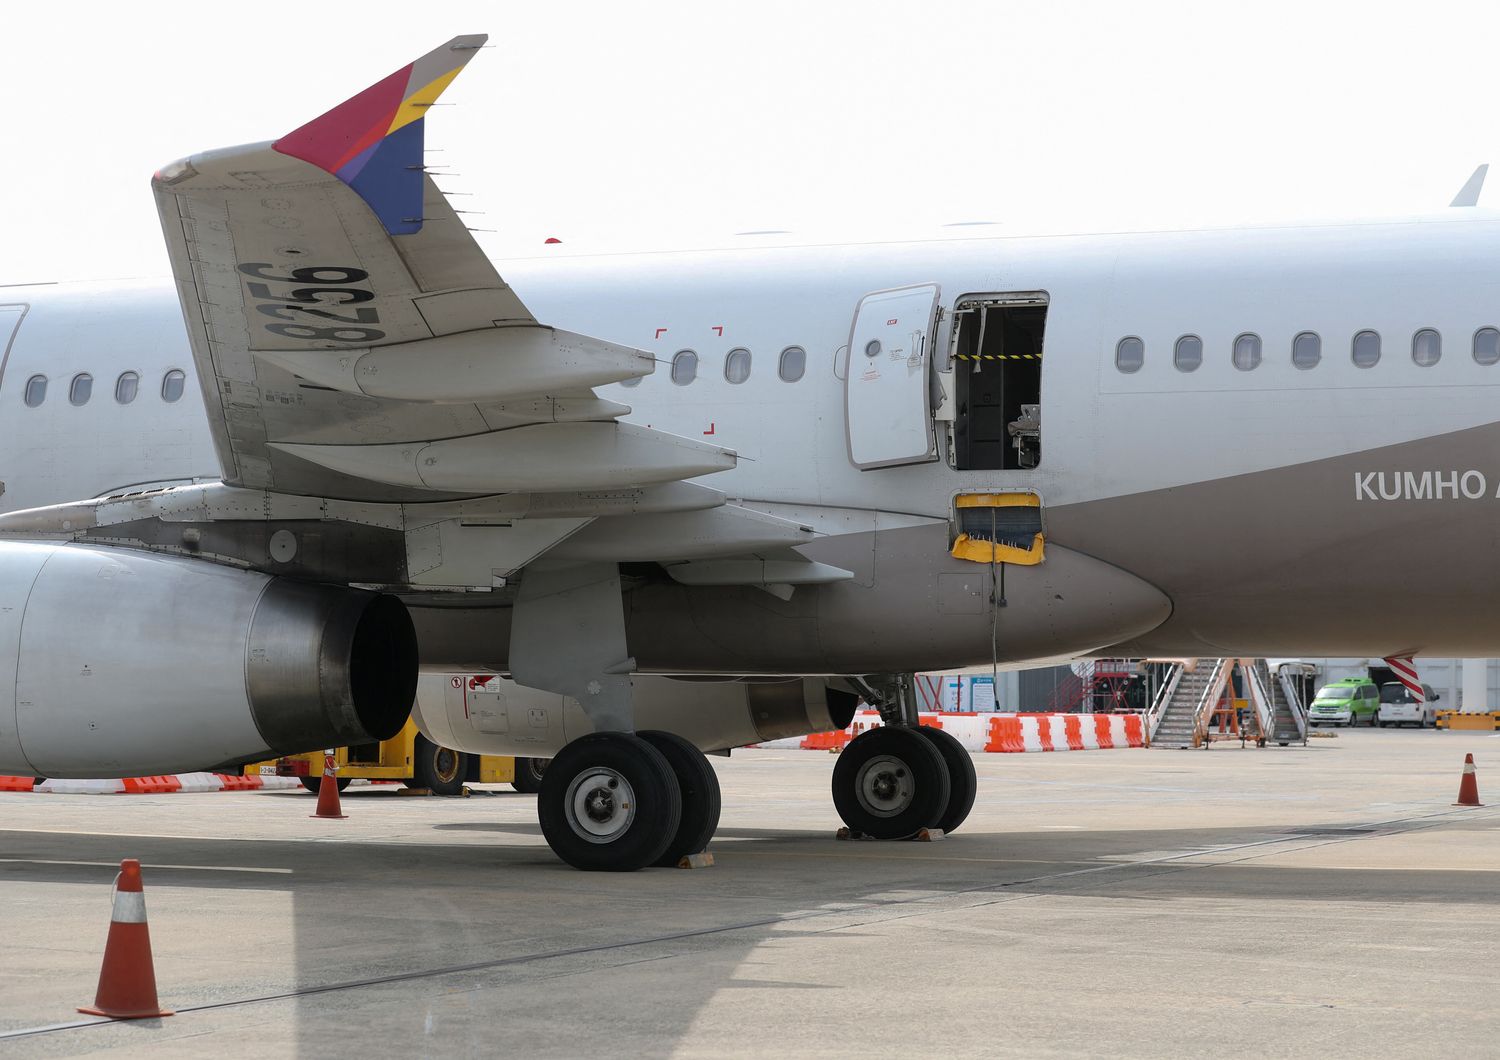 L'aereo della asiana con il portello di emergenza aperto